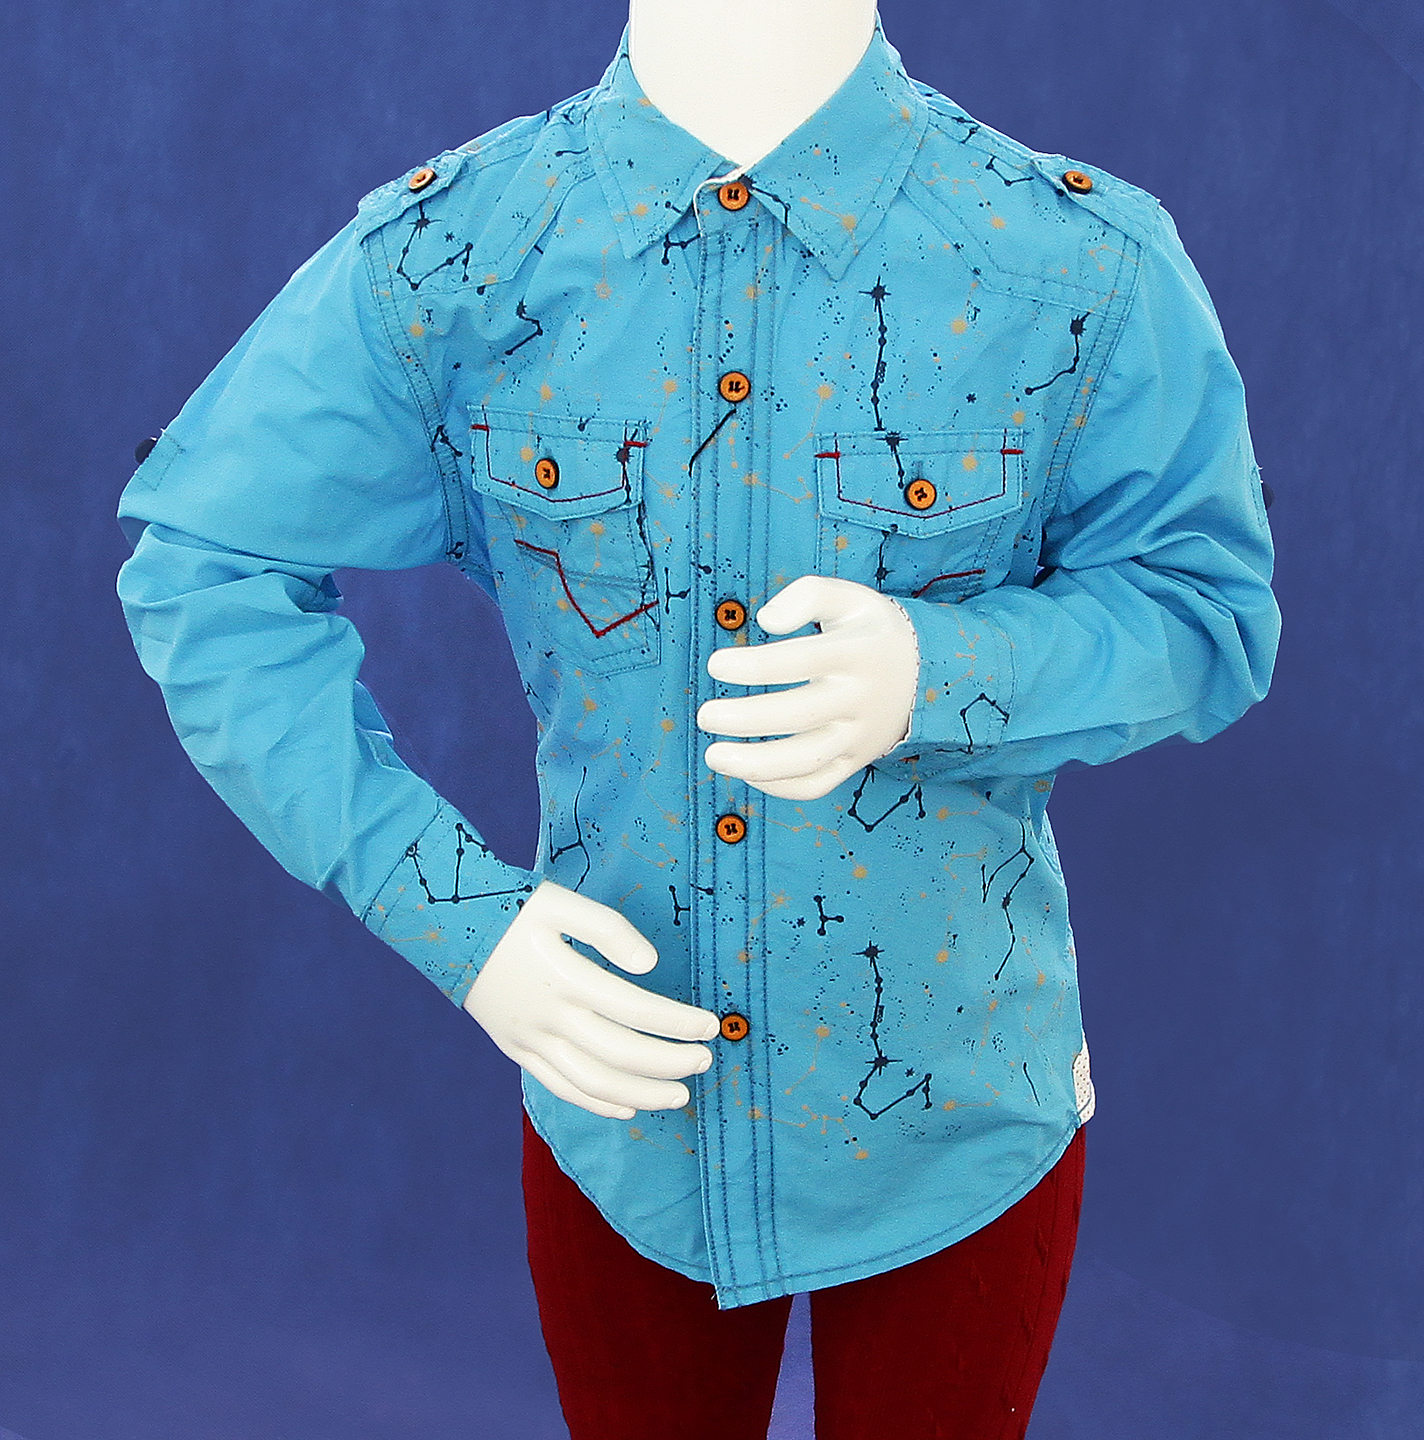 81574 Рубашка с длинным рукавом (Р-р: 4; Цв.: Голубой; Возраст: 4 года; Рост: 104 см; Длина рукава: 28 см)